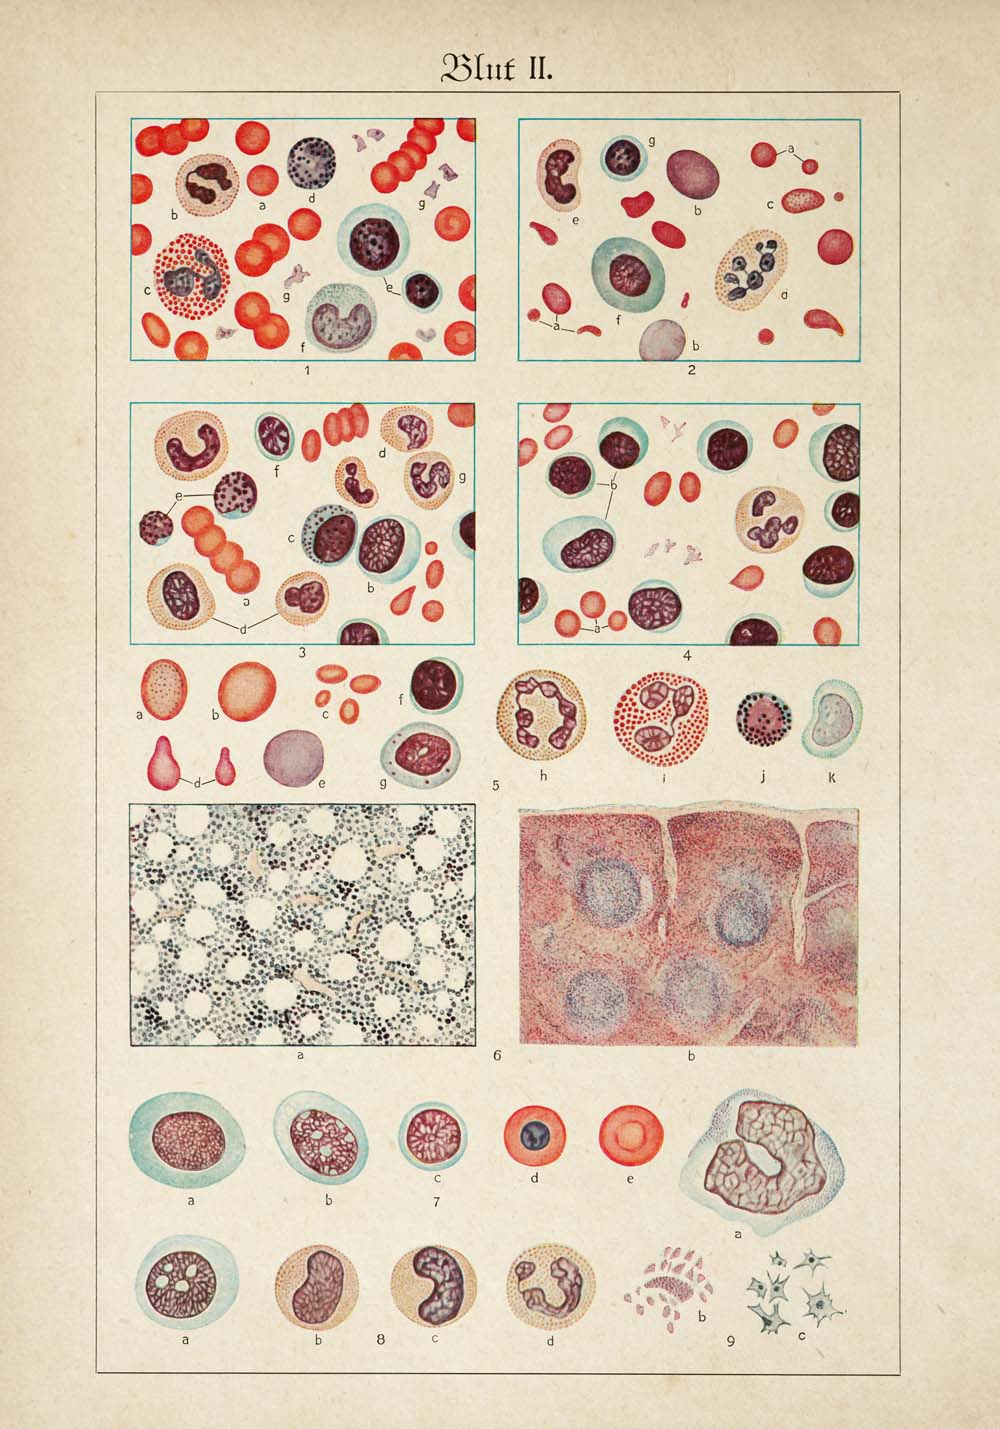 Vintage Anatomy Posters "BLOOD" Set of 3 Prints